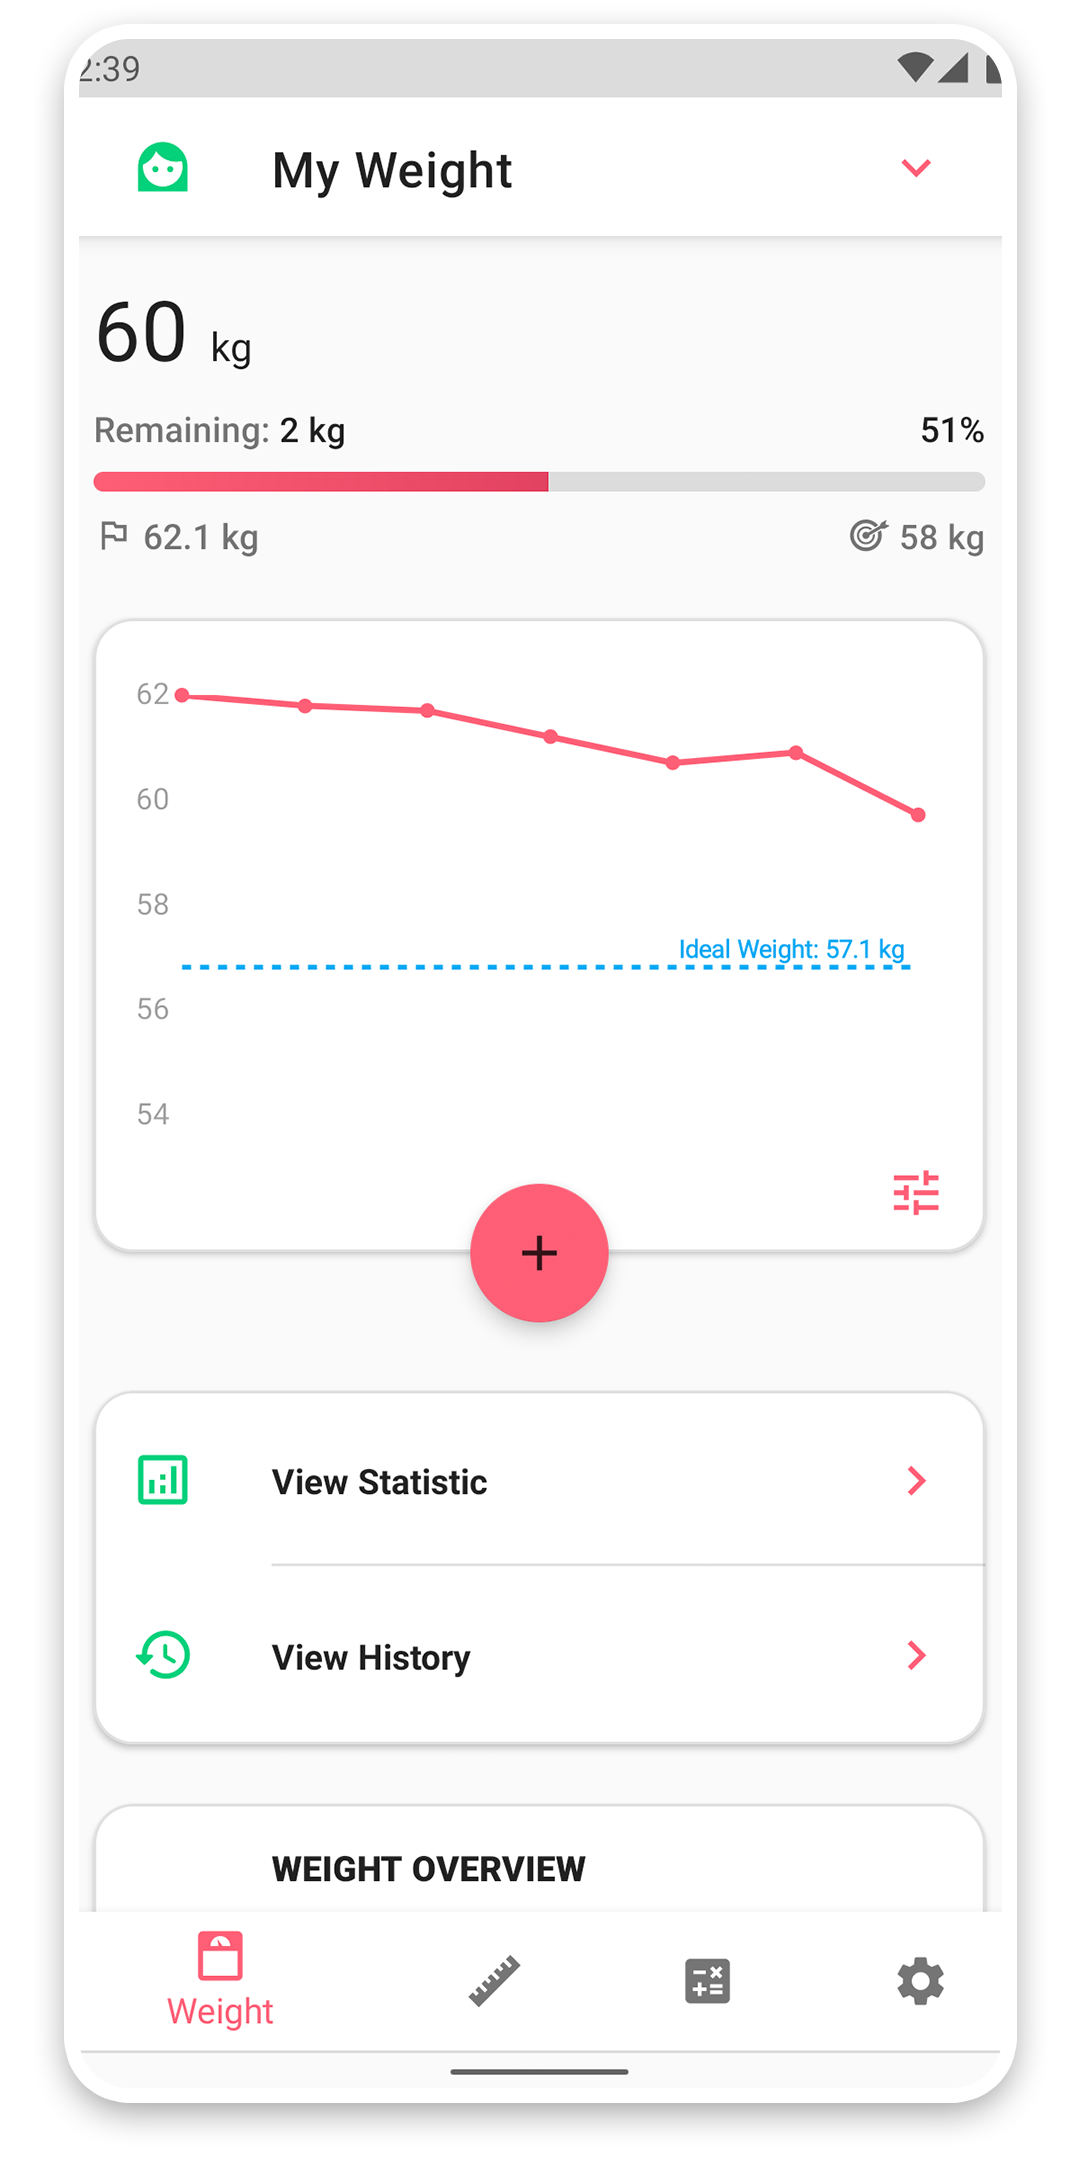 Weight tracker app